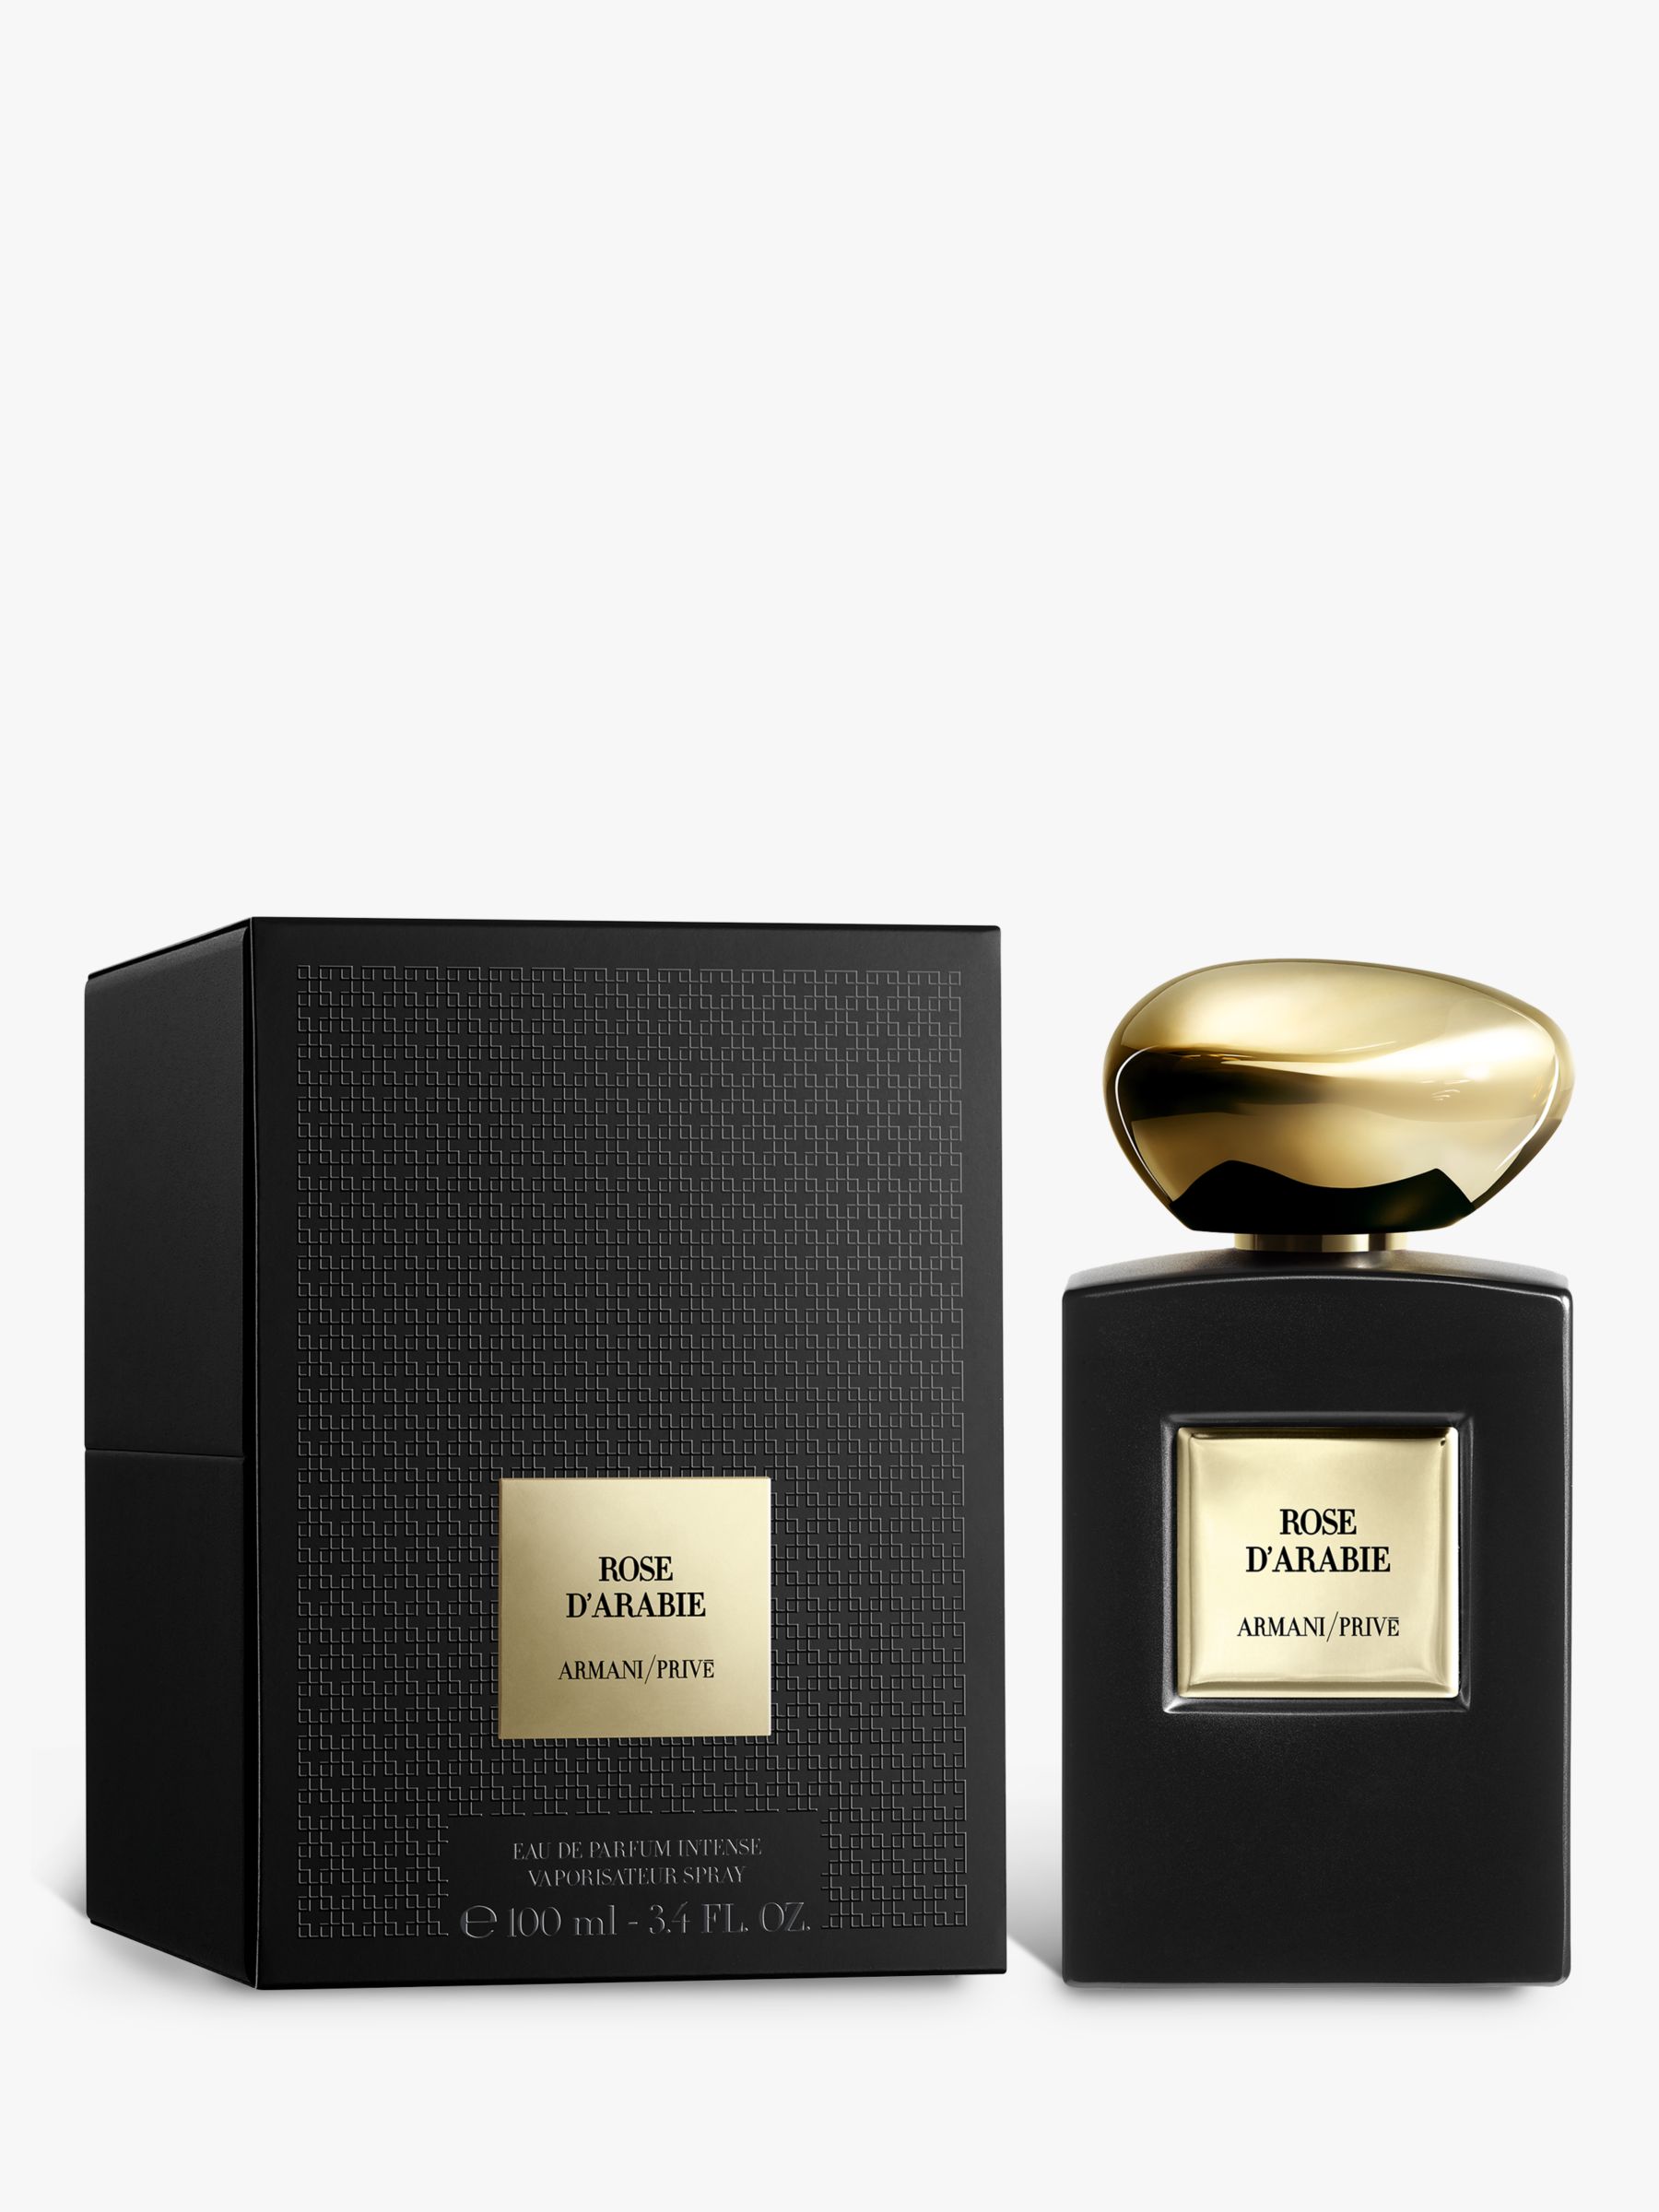 Giorgio Armani / Privé Rose D'Arabie Eau de Parfum, 100ml at John Lewis &  Partners